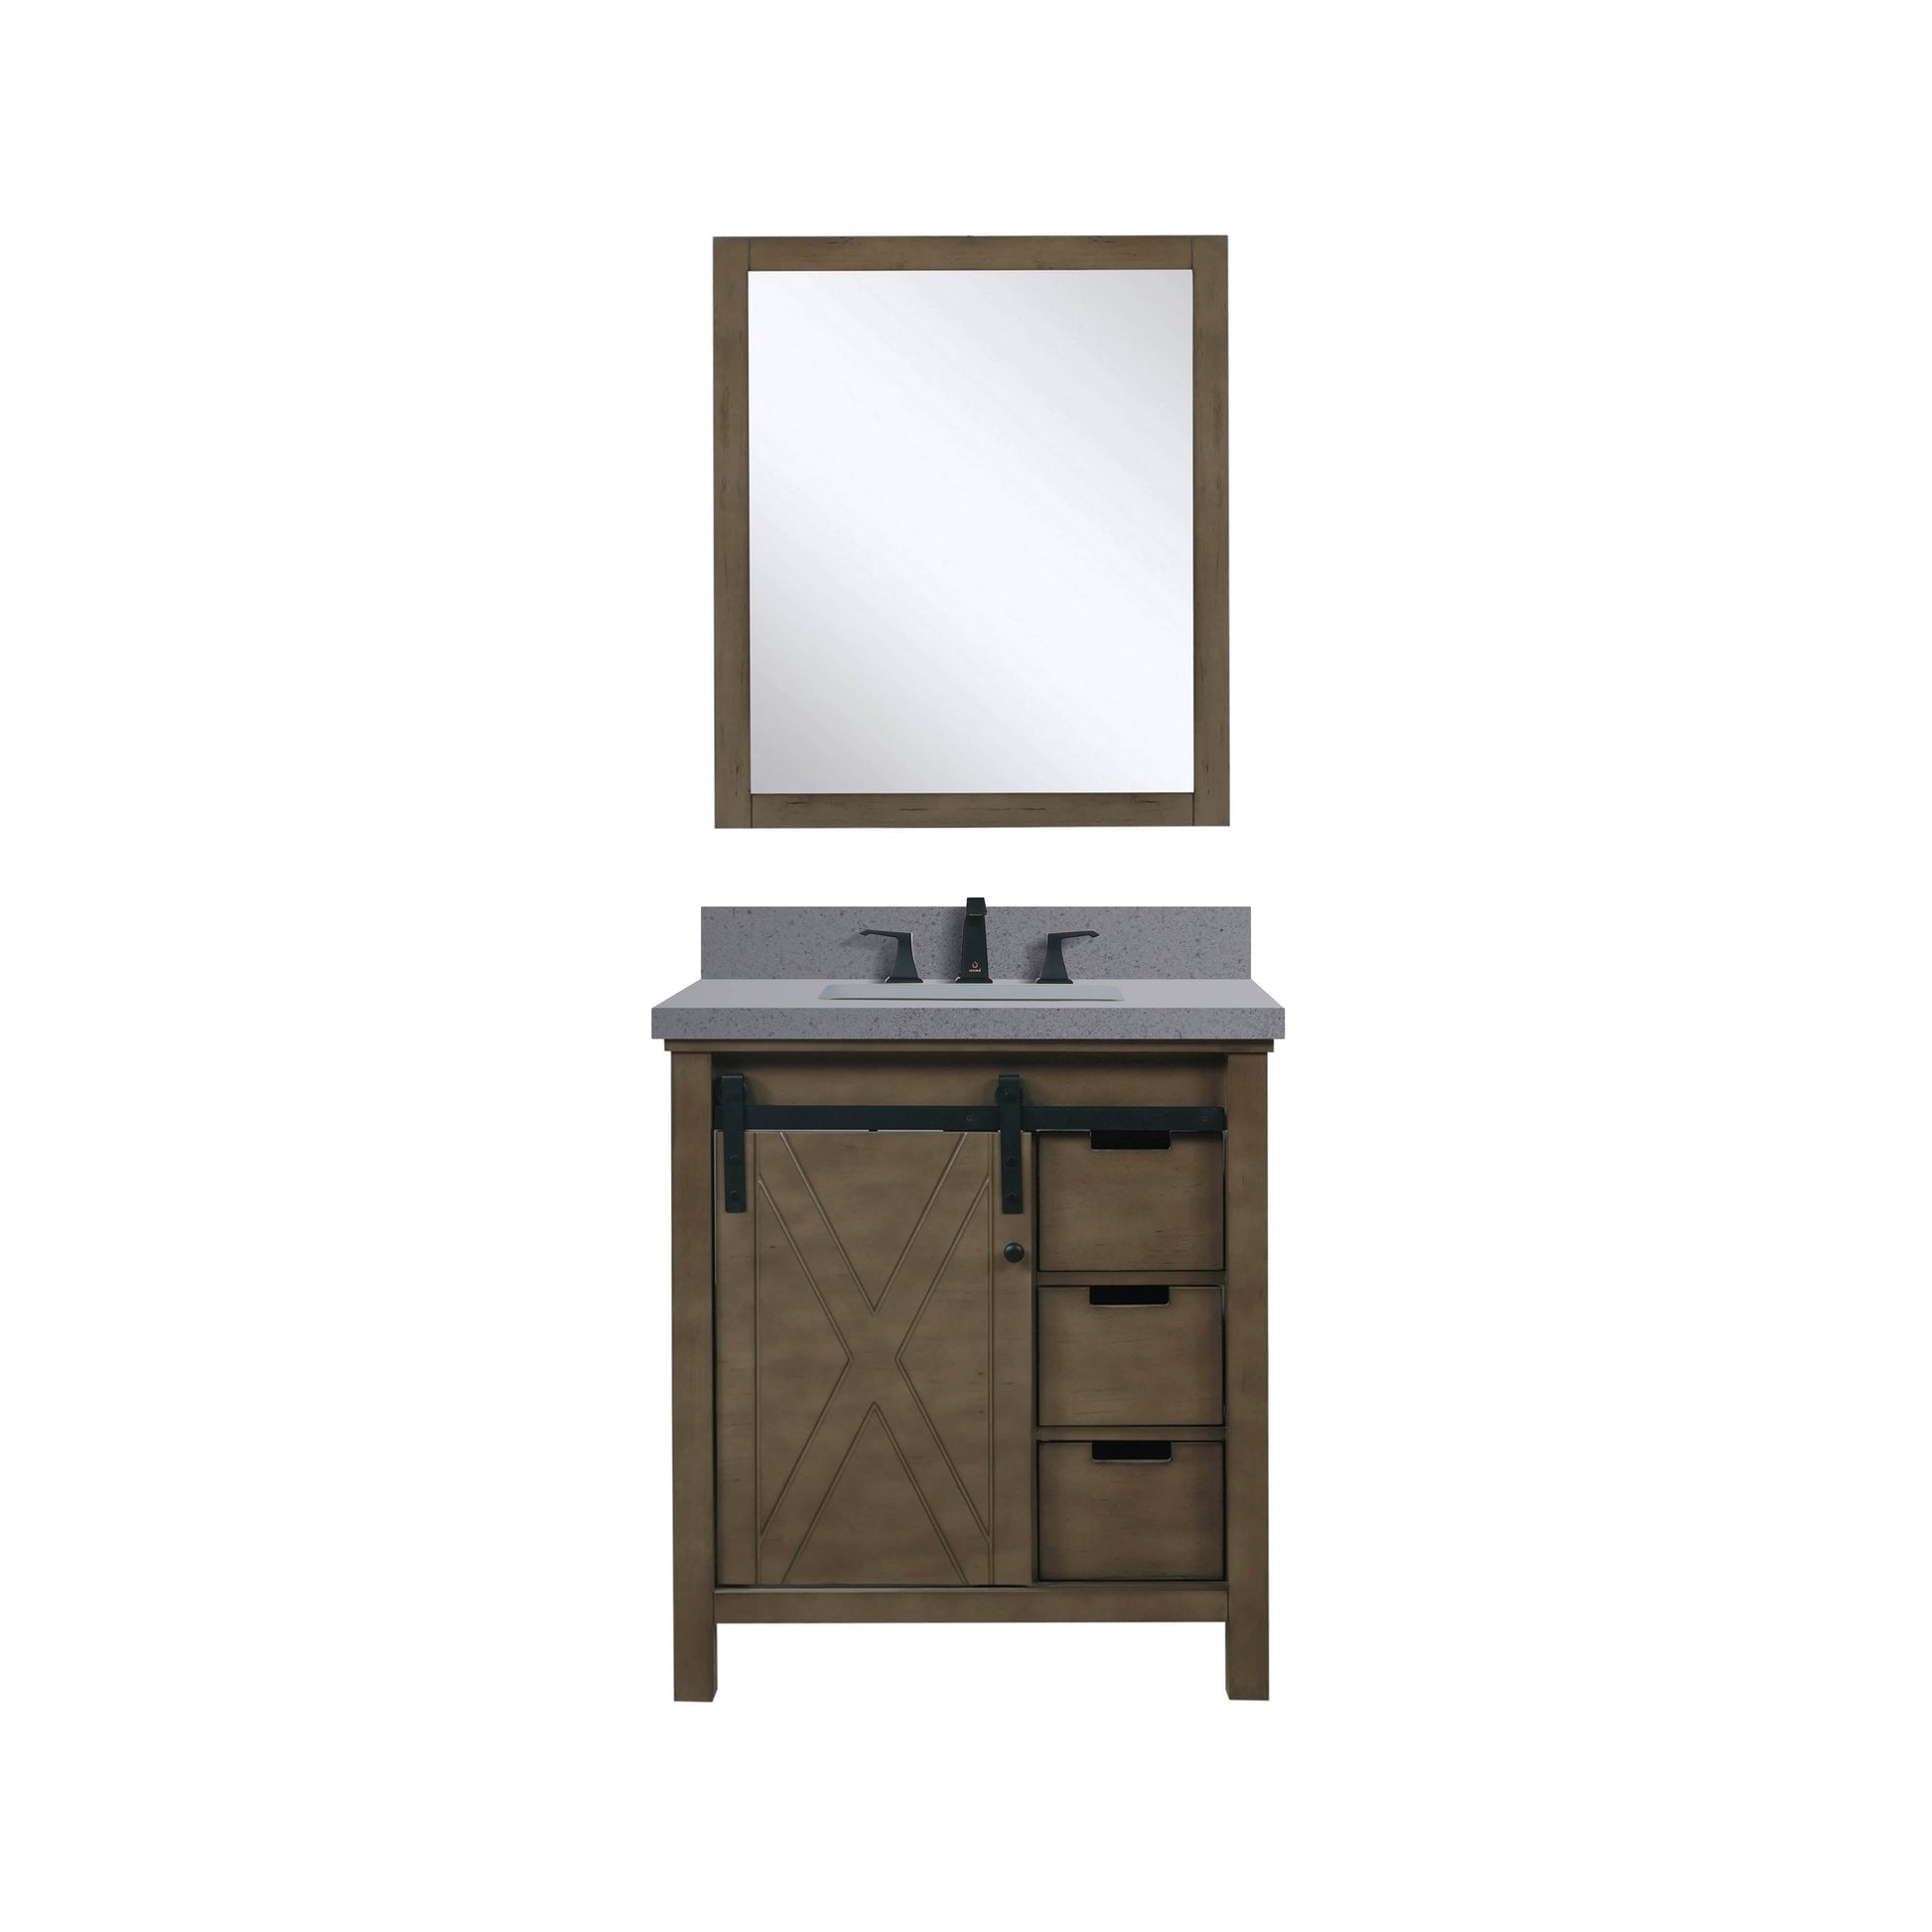 Bell + Modern Bathroom Vanity Ketchum 30" x 22" Single Bath Vanity